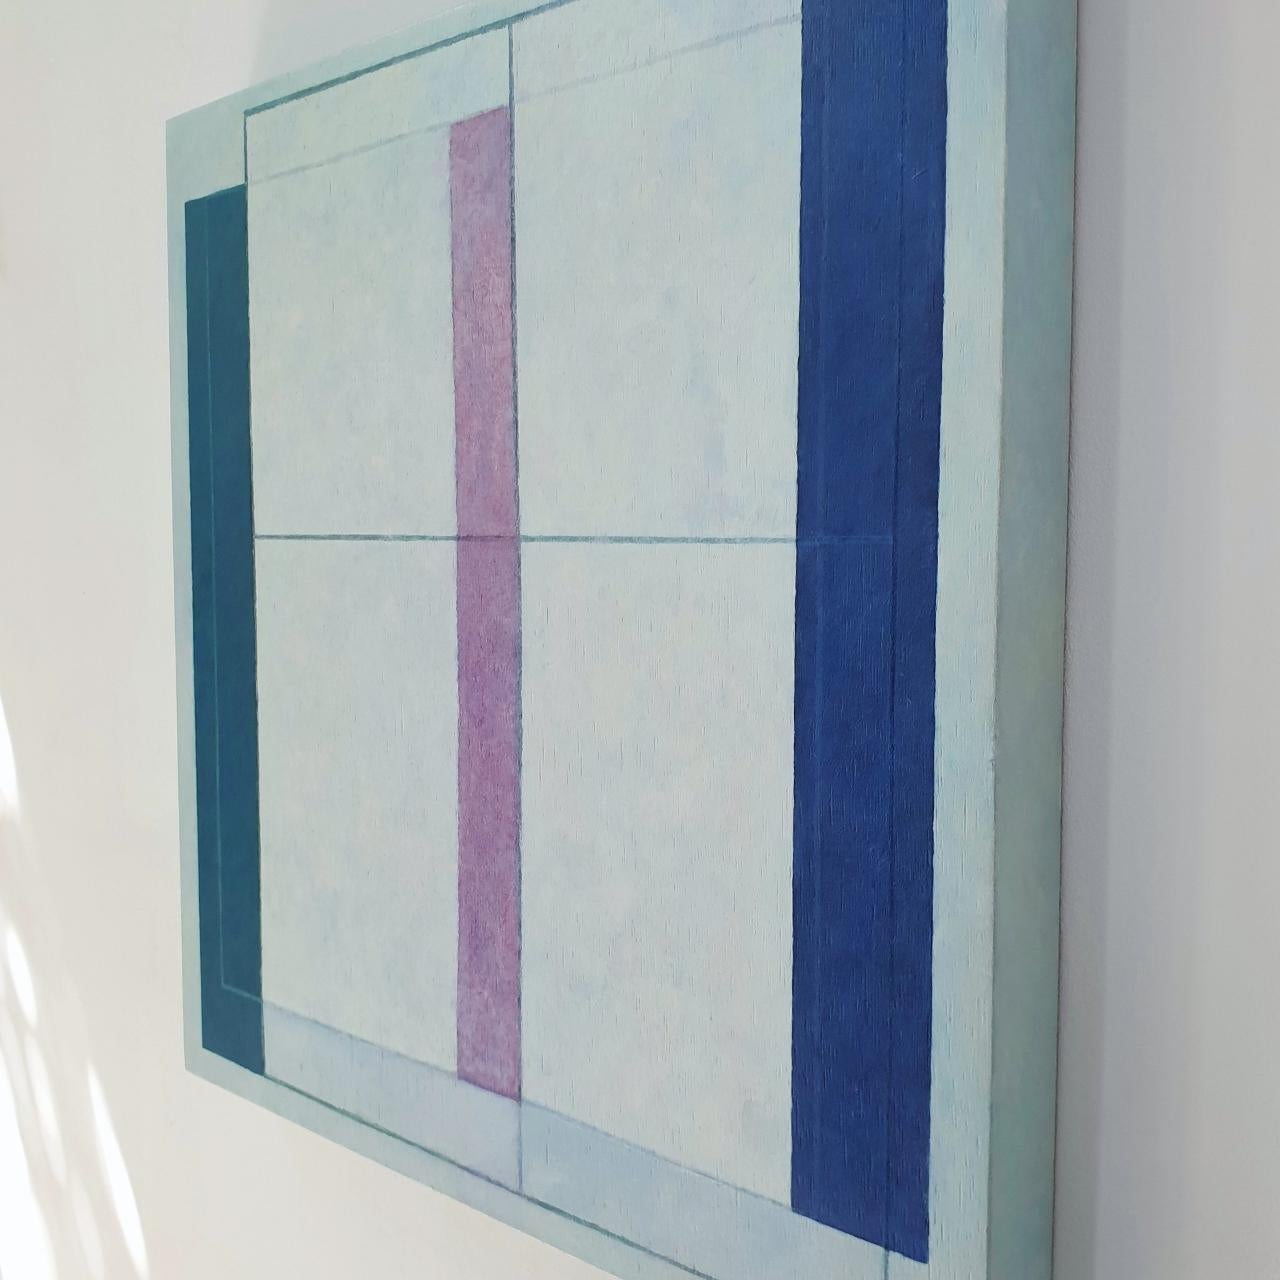 Fentre transparente – zeitgenössische moderne geometrische Skulptur-Malereiplatte (Braun), Abstract Painting, von Olivier Julia